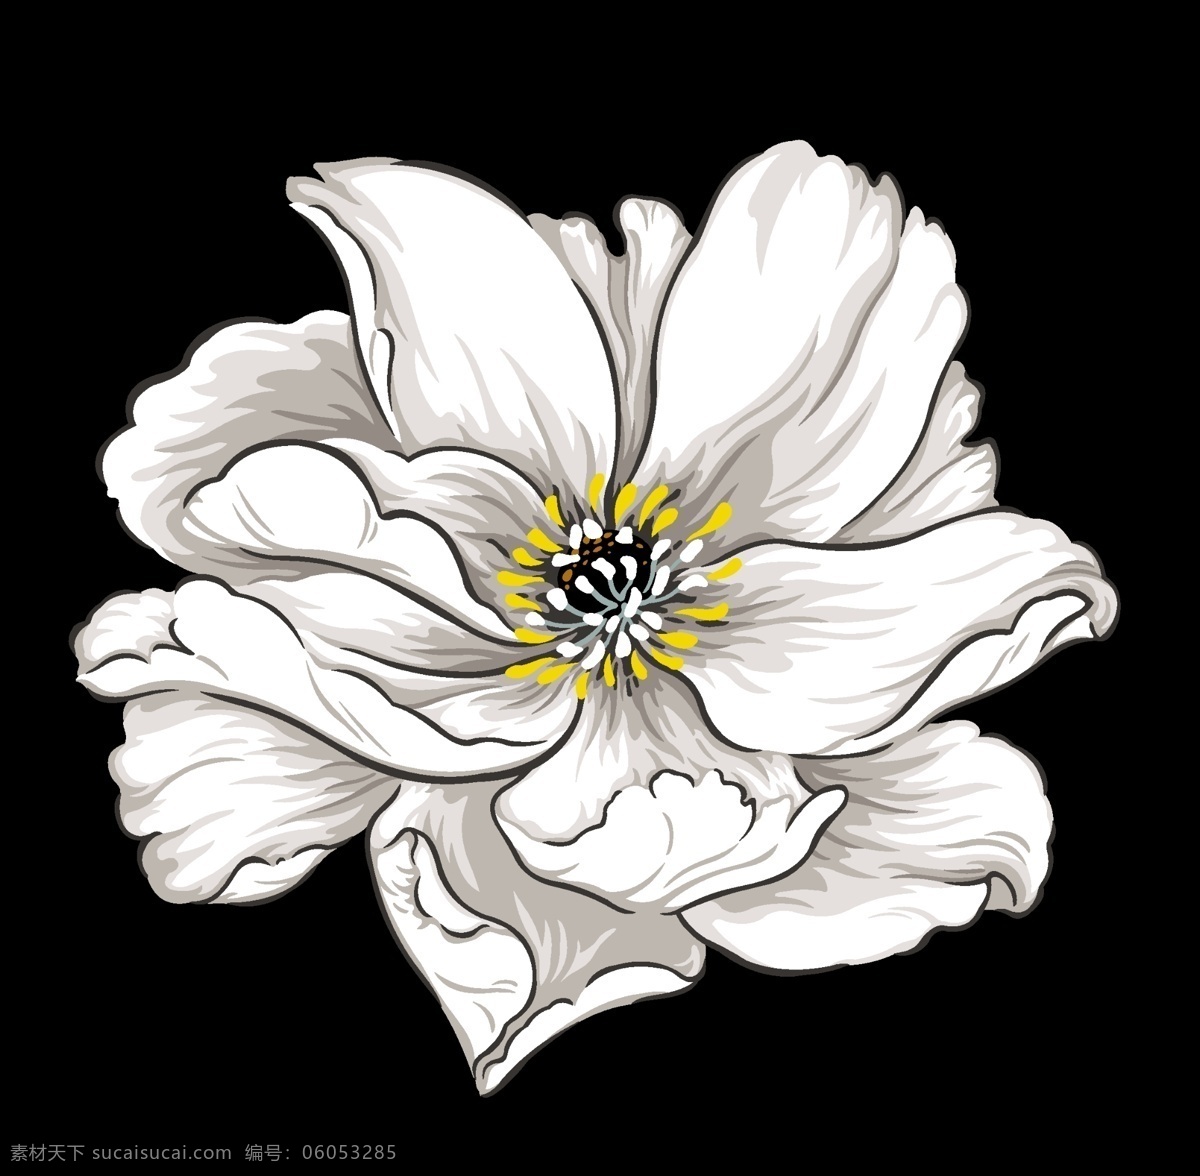 手绘花卉图片 手绘花 创意花卉 印花素材 高清 服装图案素材 家纺图案素材 花卉